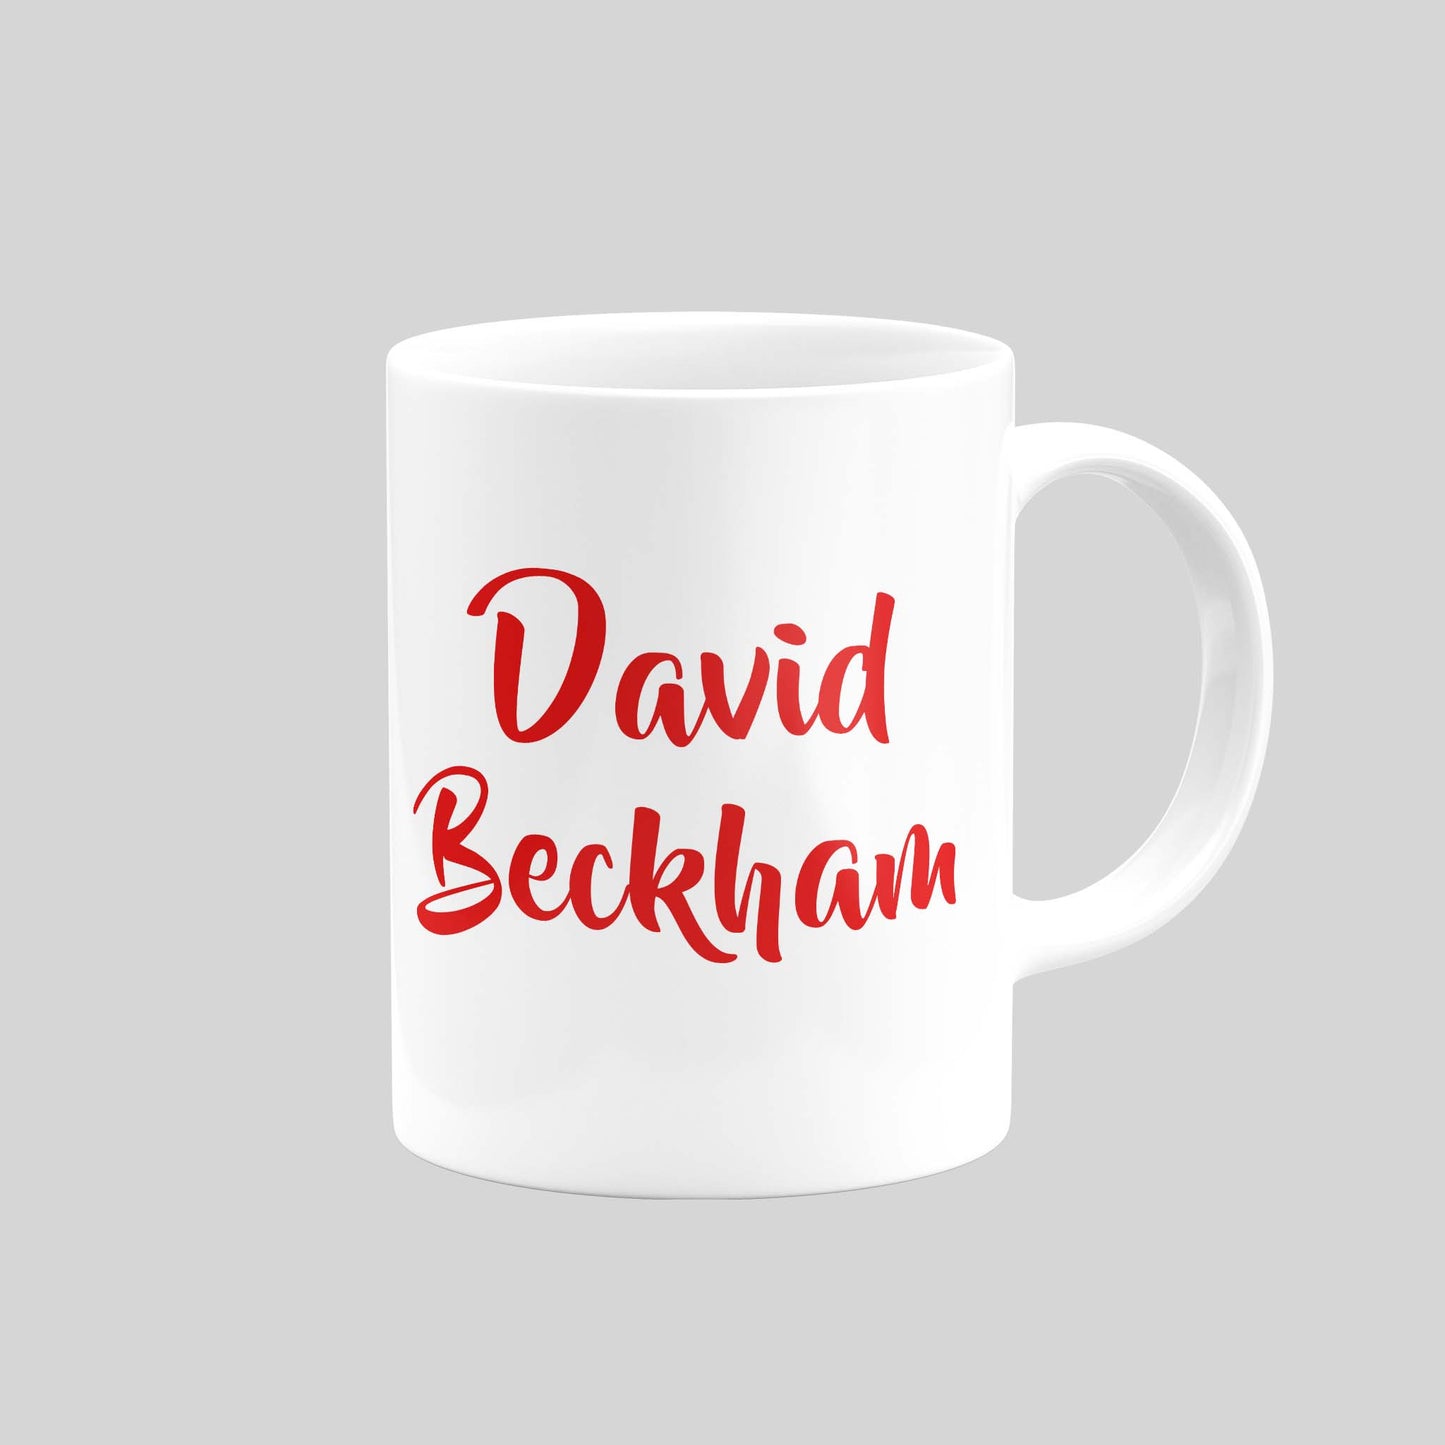 David Beckham Utd Mug